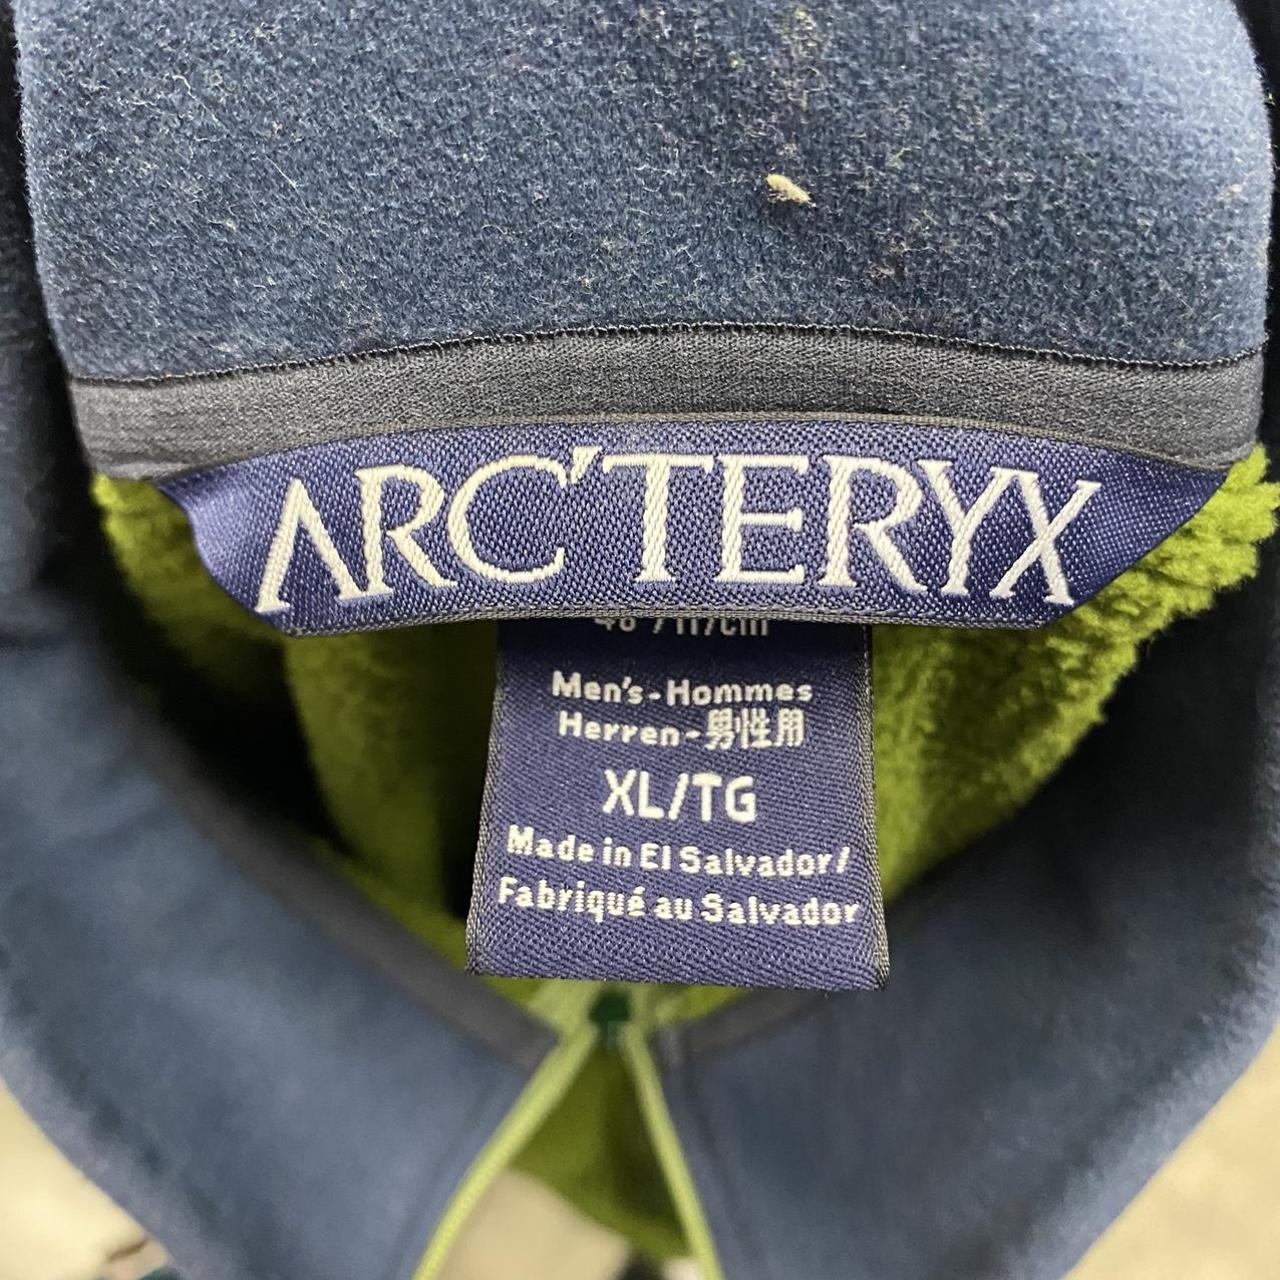 Vintage arcteryx fleece jacket Size xL mens Good... - Depop